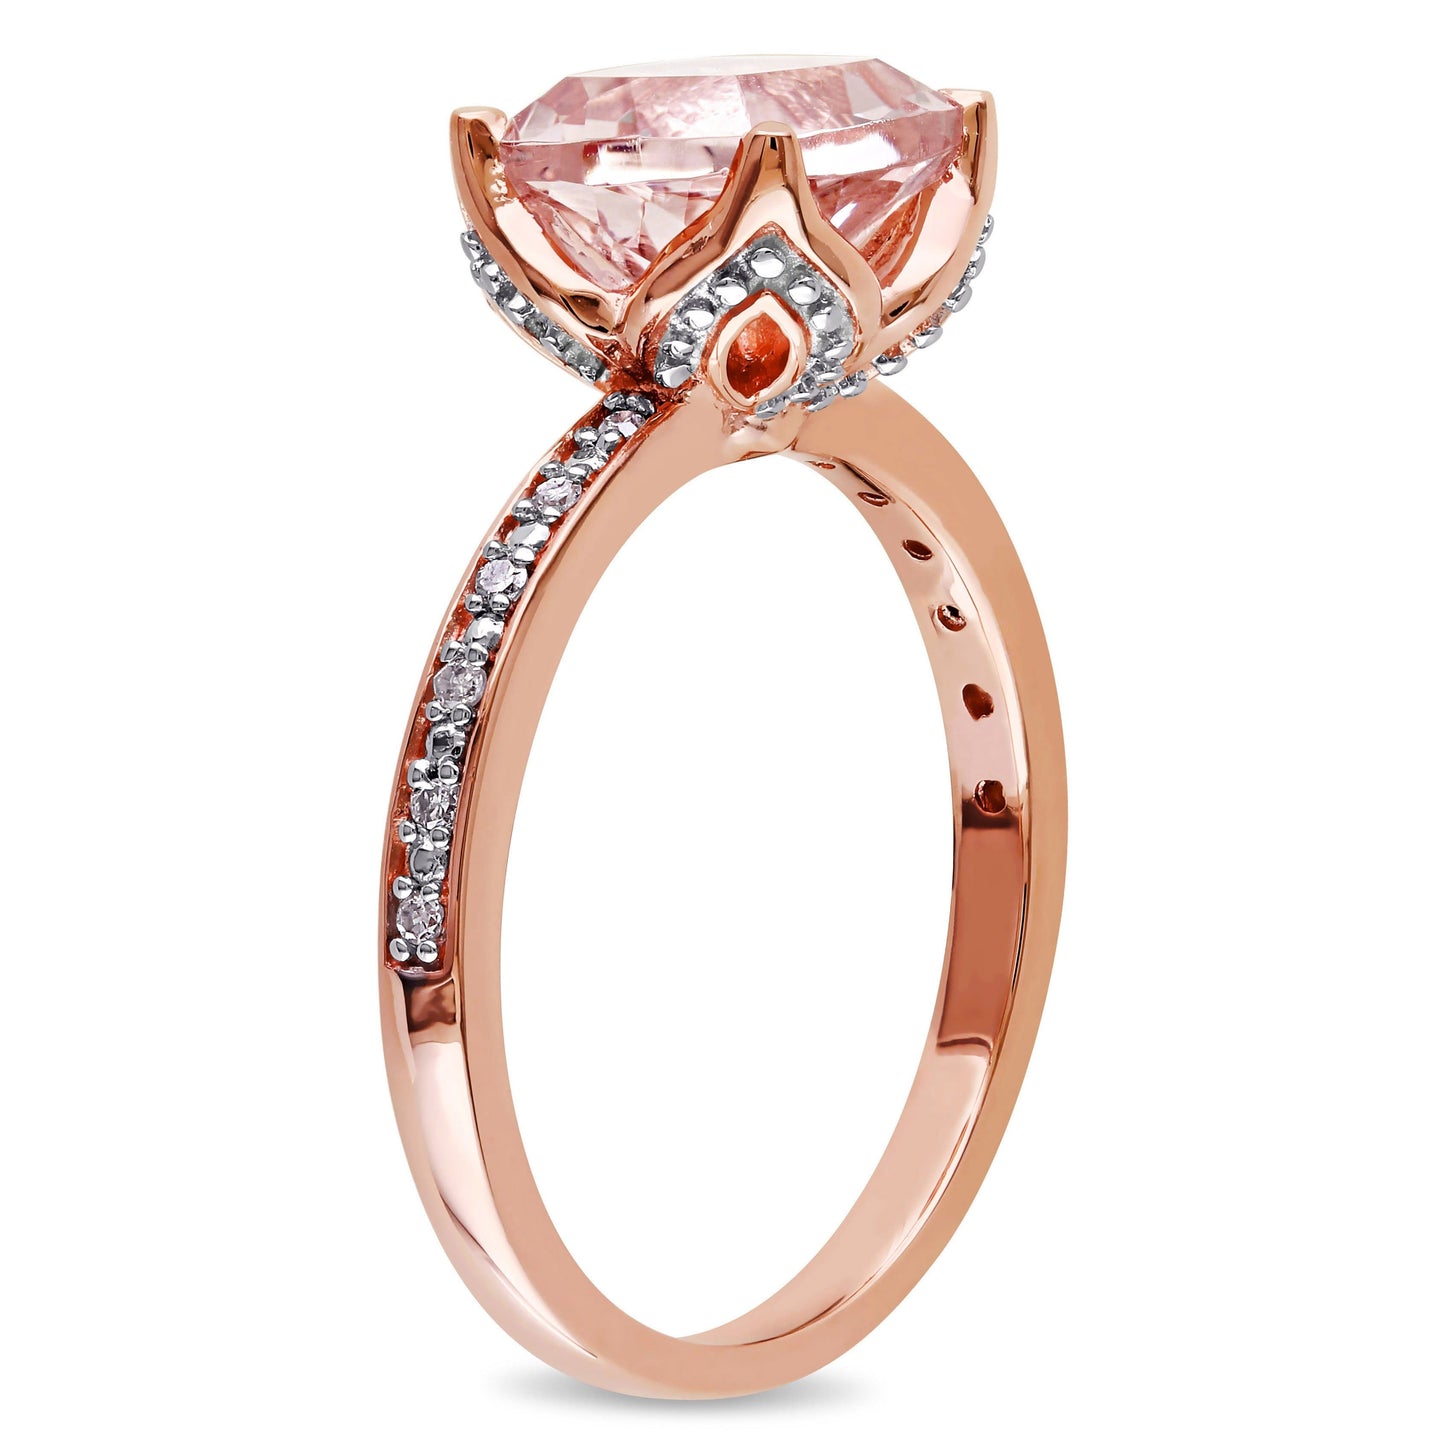 Sophia B Morganite & Diamond Ring in 10k Rose Gold